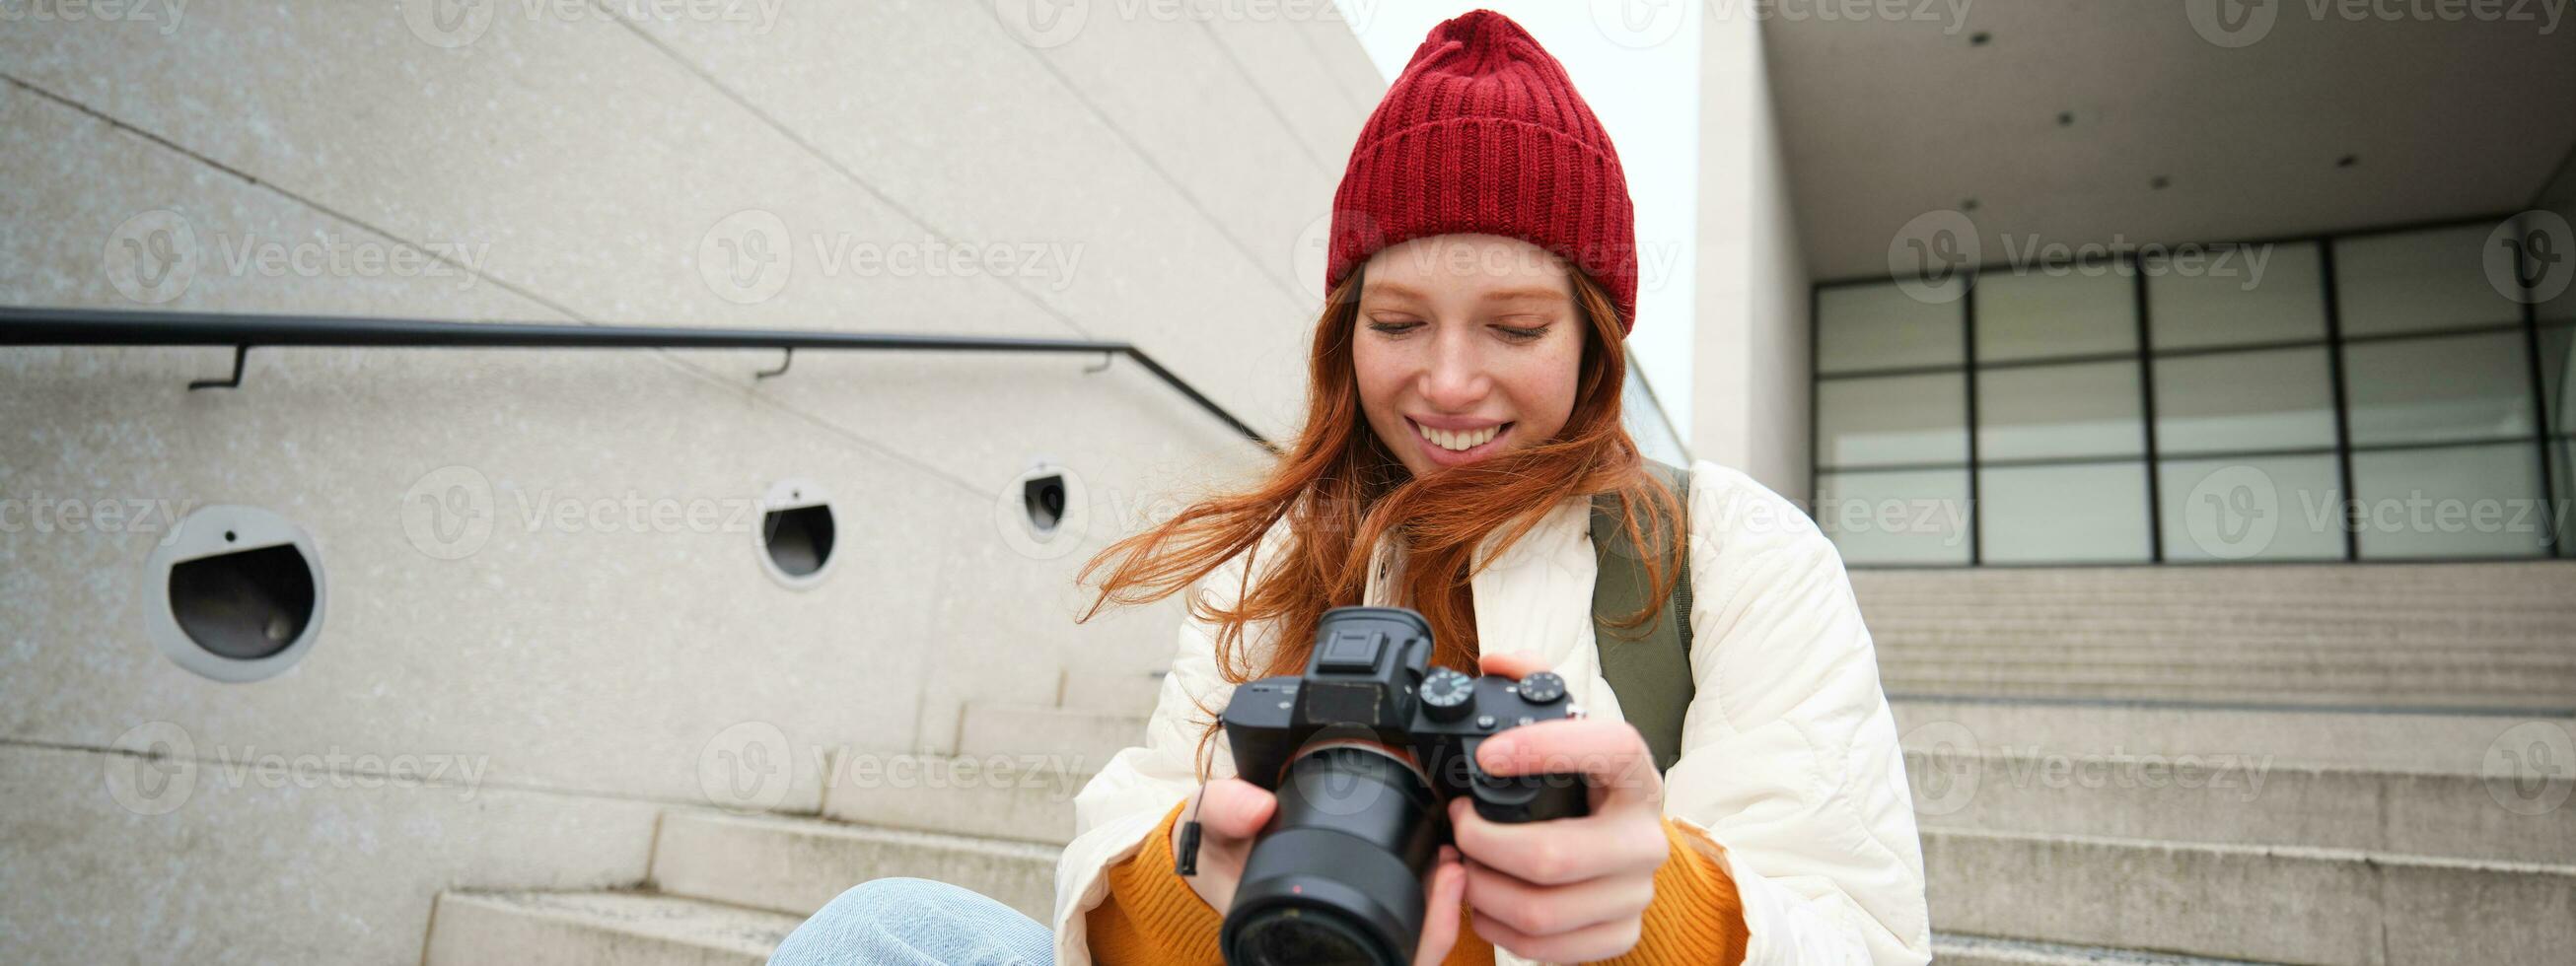 urban människor och livsstil. Lycklig rödhårig kvinna tar foton, innehav professionell digital kamera, fotografering på gator foto